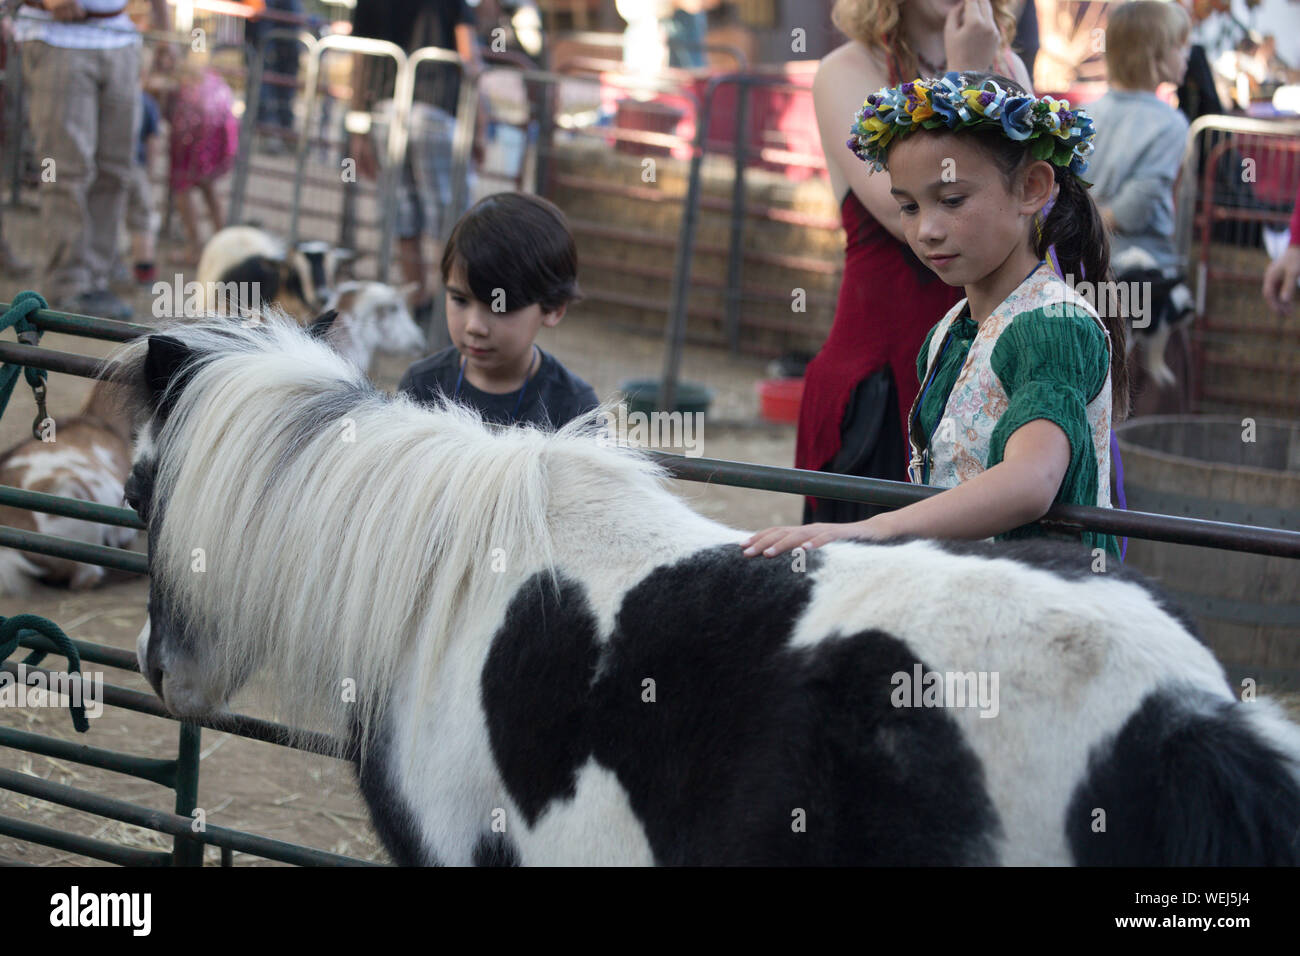 Bruder und Schwester 5-6 Jahre alt und 9 Jahre alt der asiatischen Aussehen am Streichelzoo mit Pony, Gilroy, Kalifornien Stockfoto